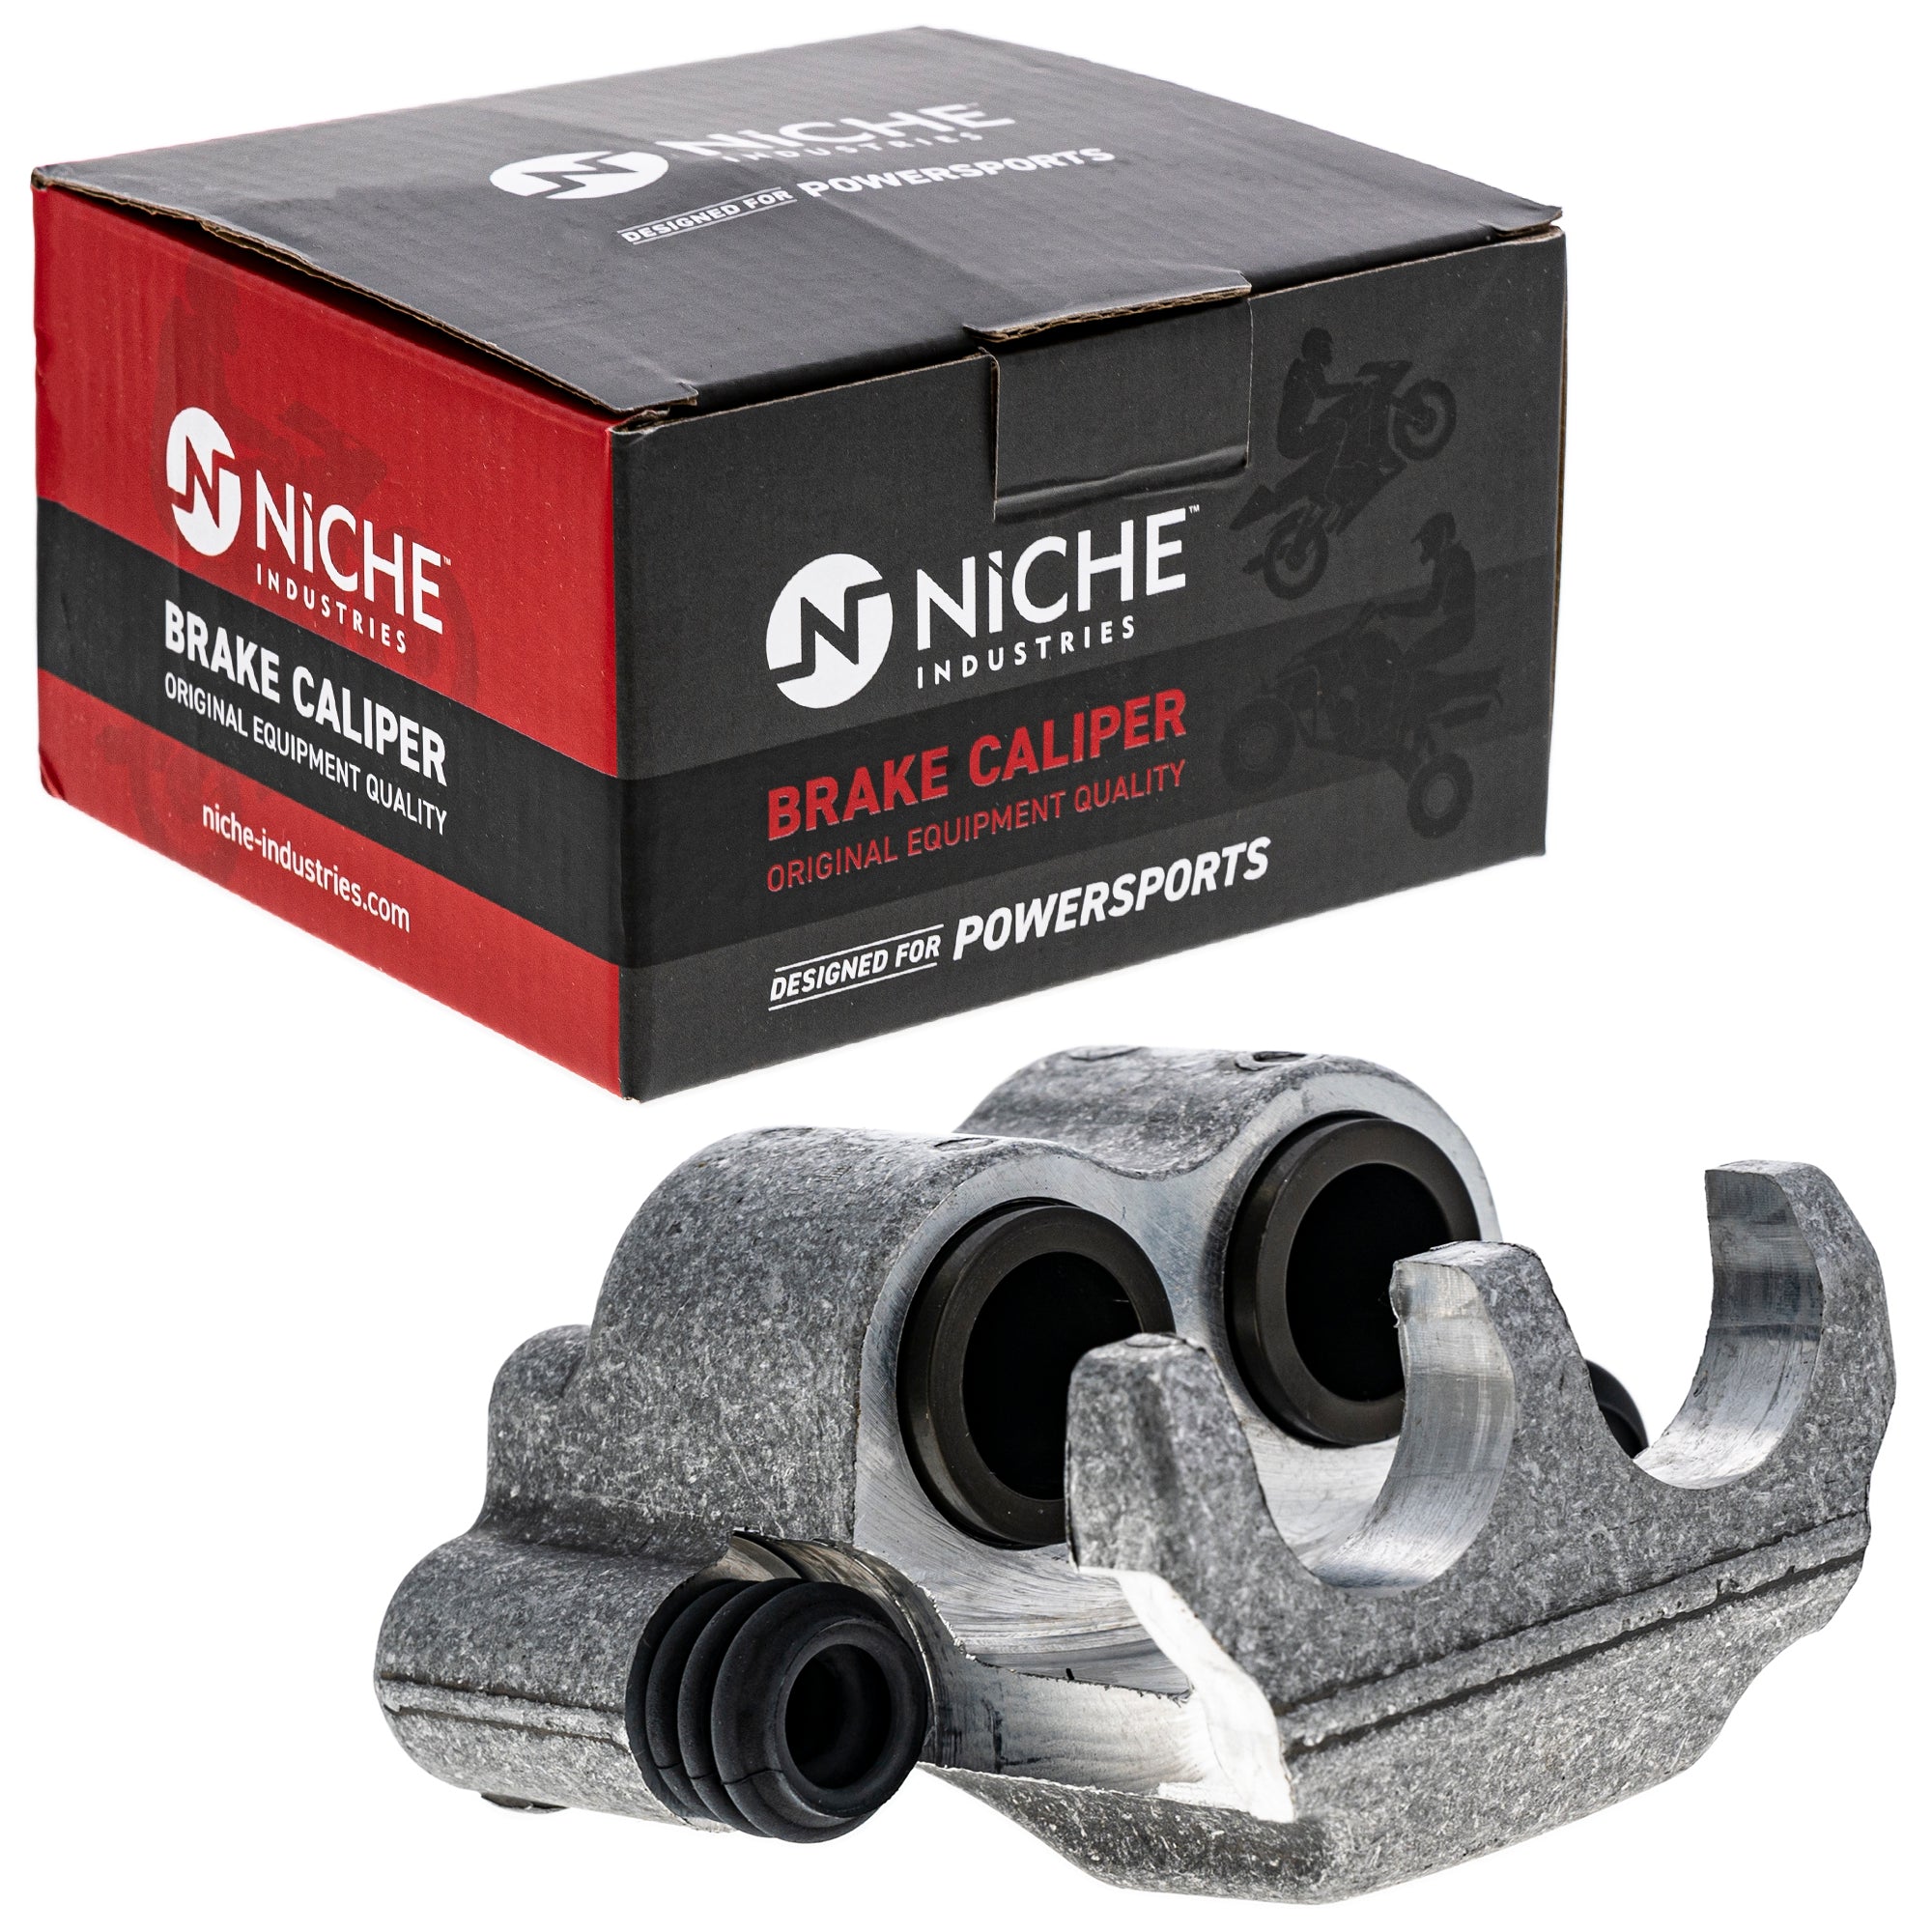 NICHE MK1001068 Brake Caliper Kit